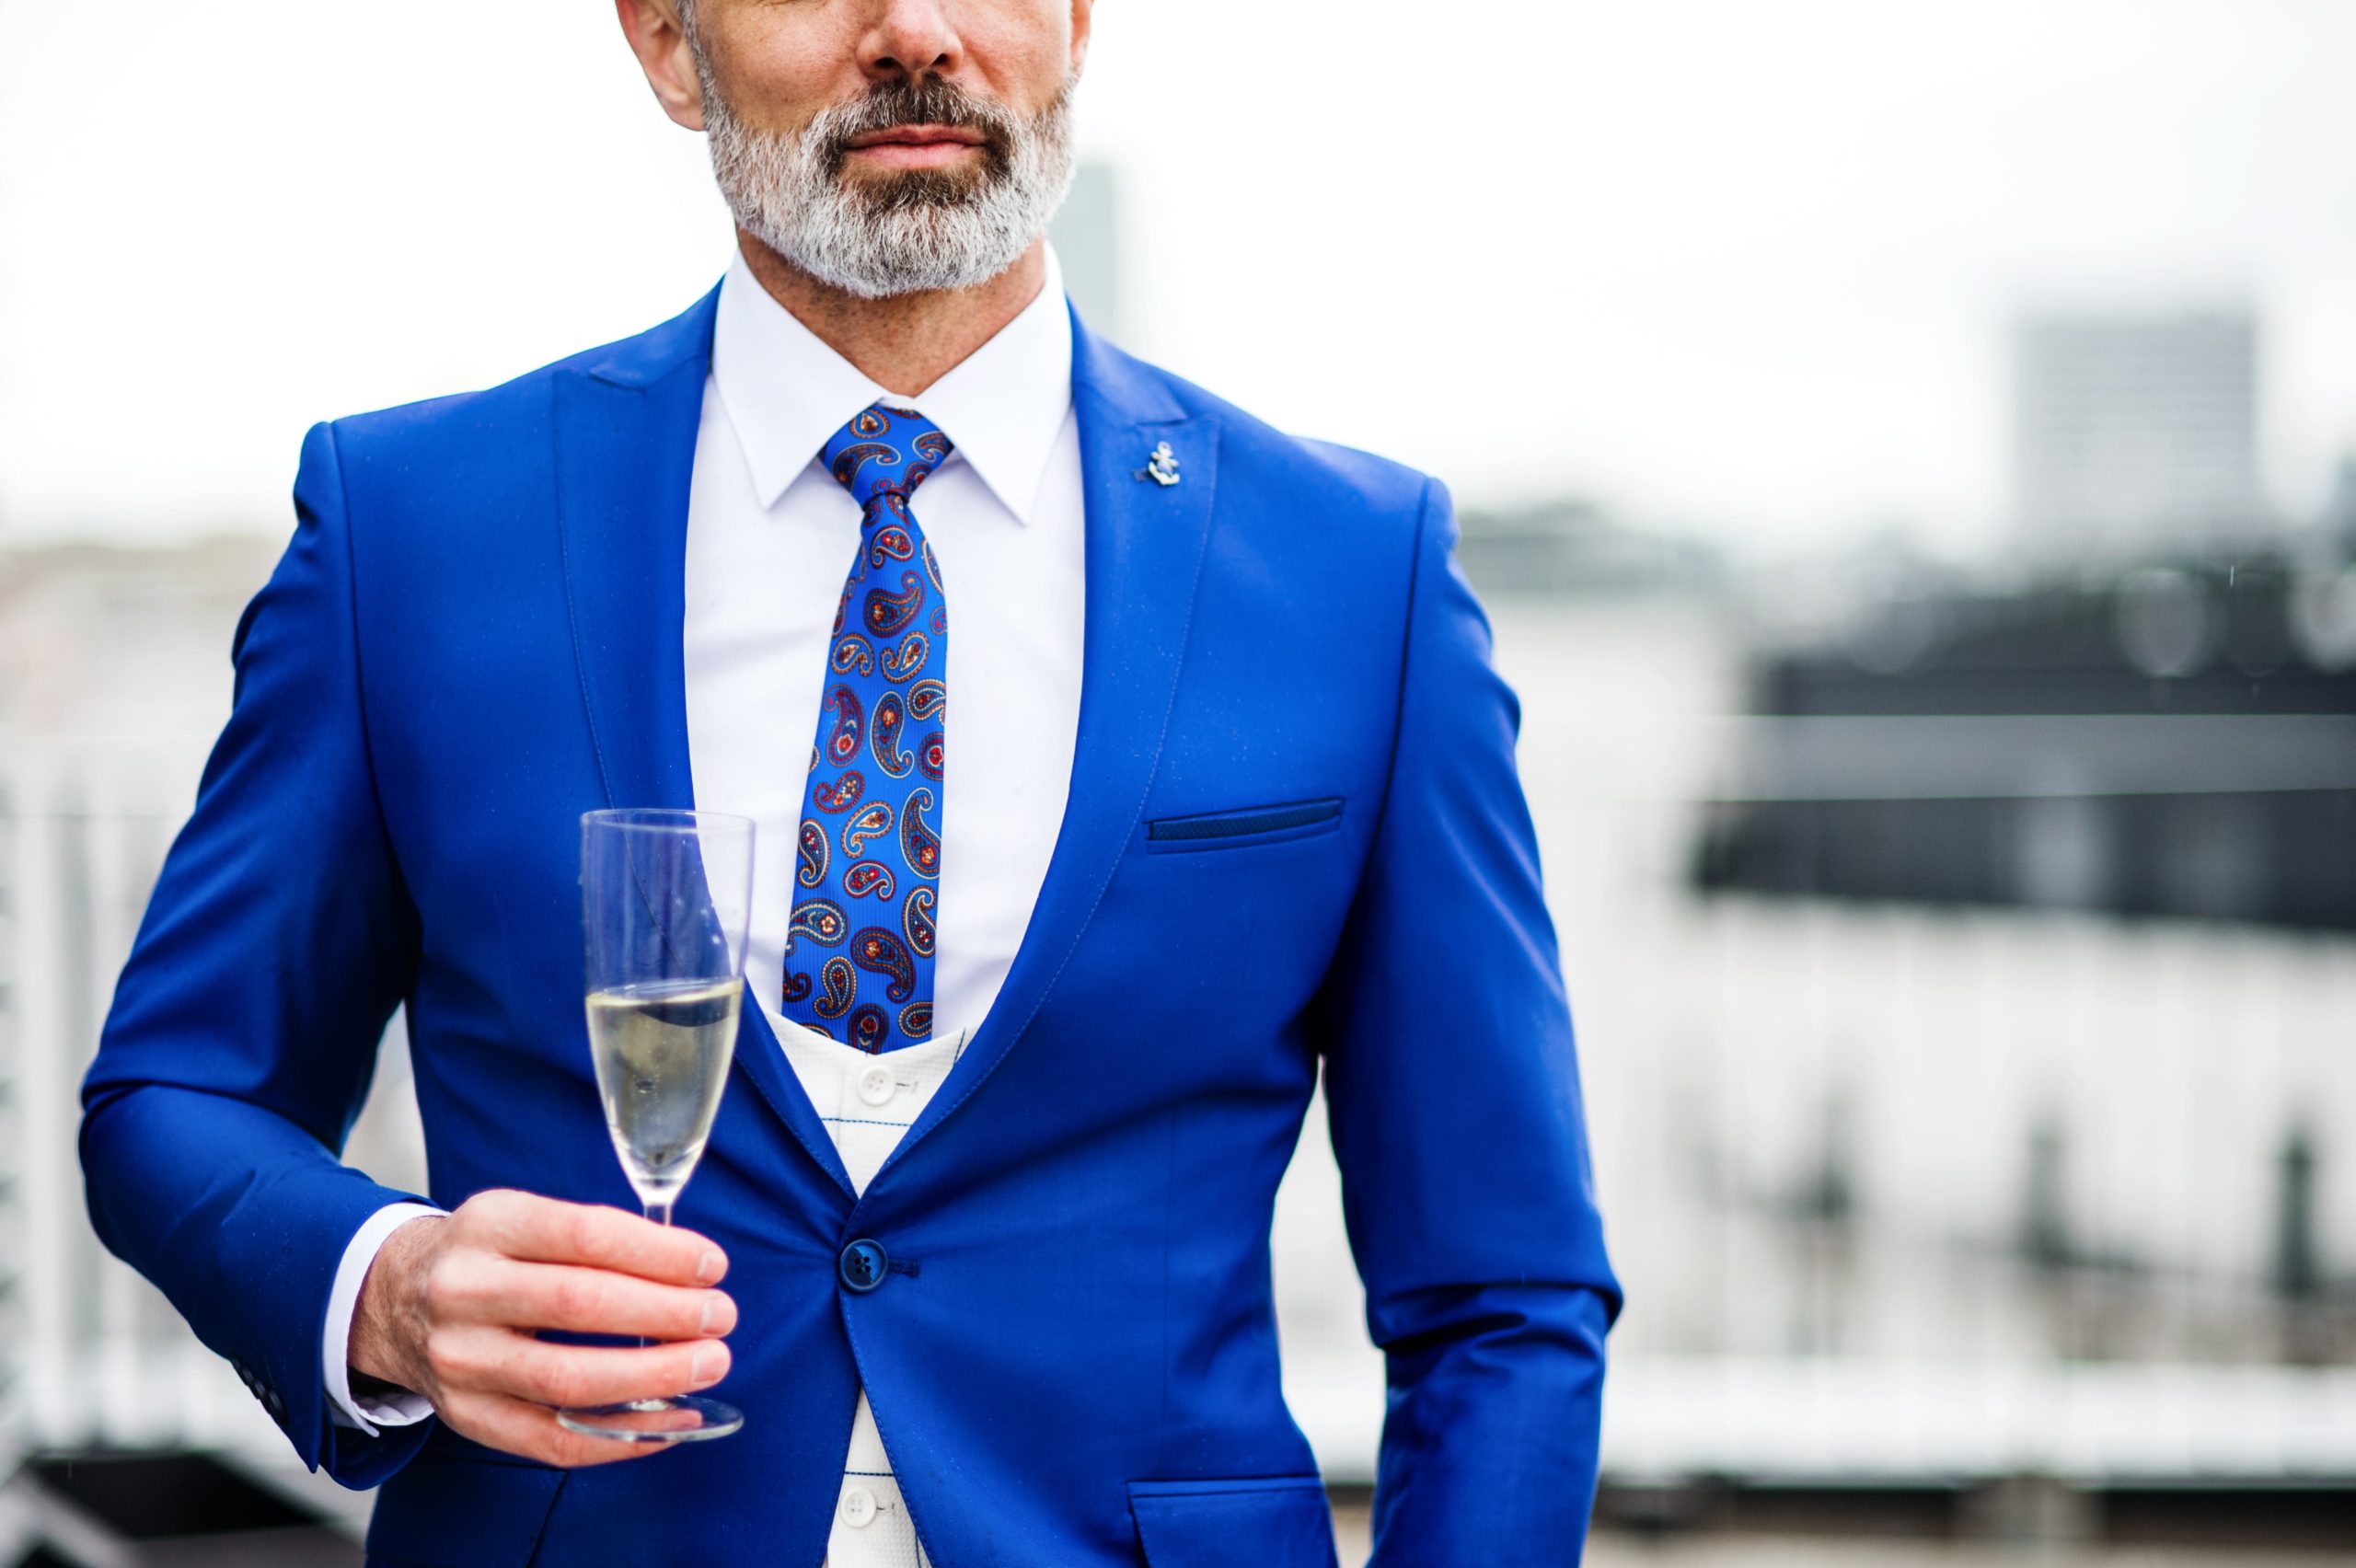 Cocktail dress code, czyli strój koktajlowy męski. Wyjaśniamy jego zasady